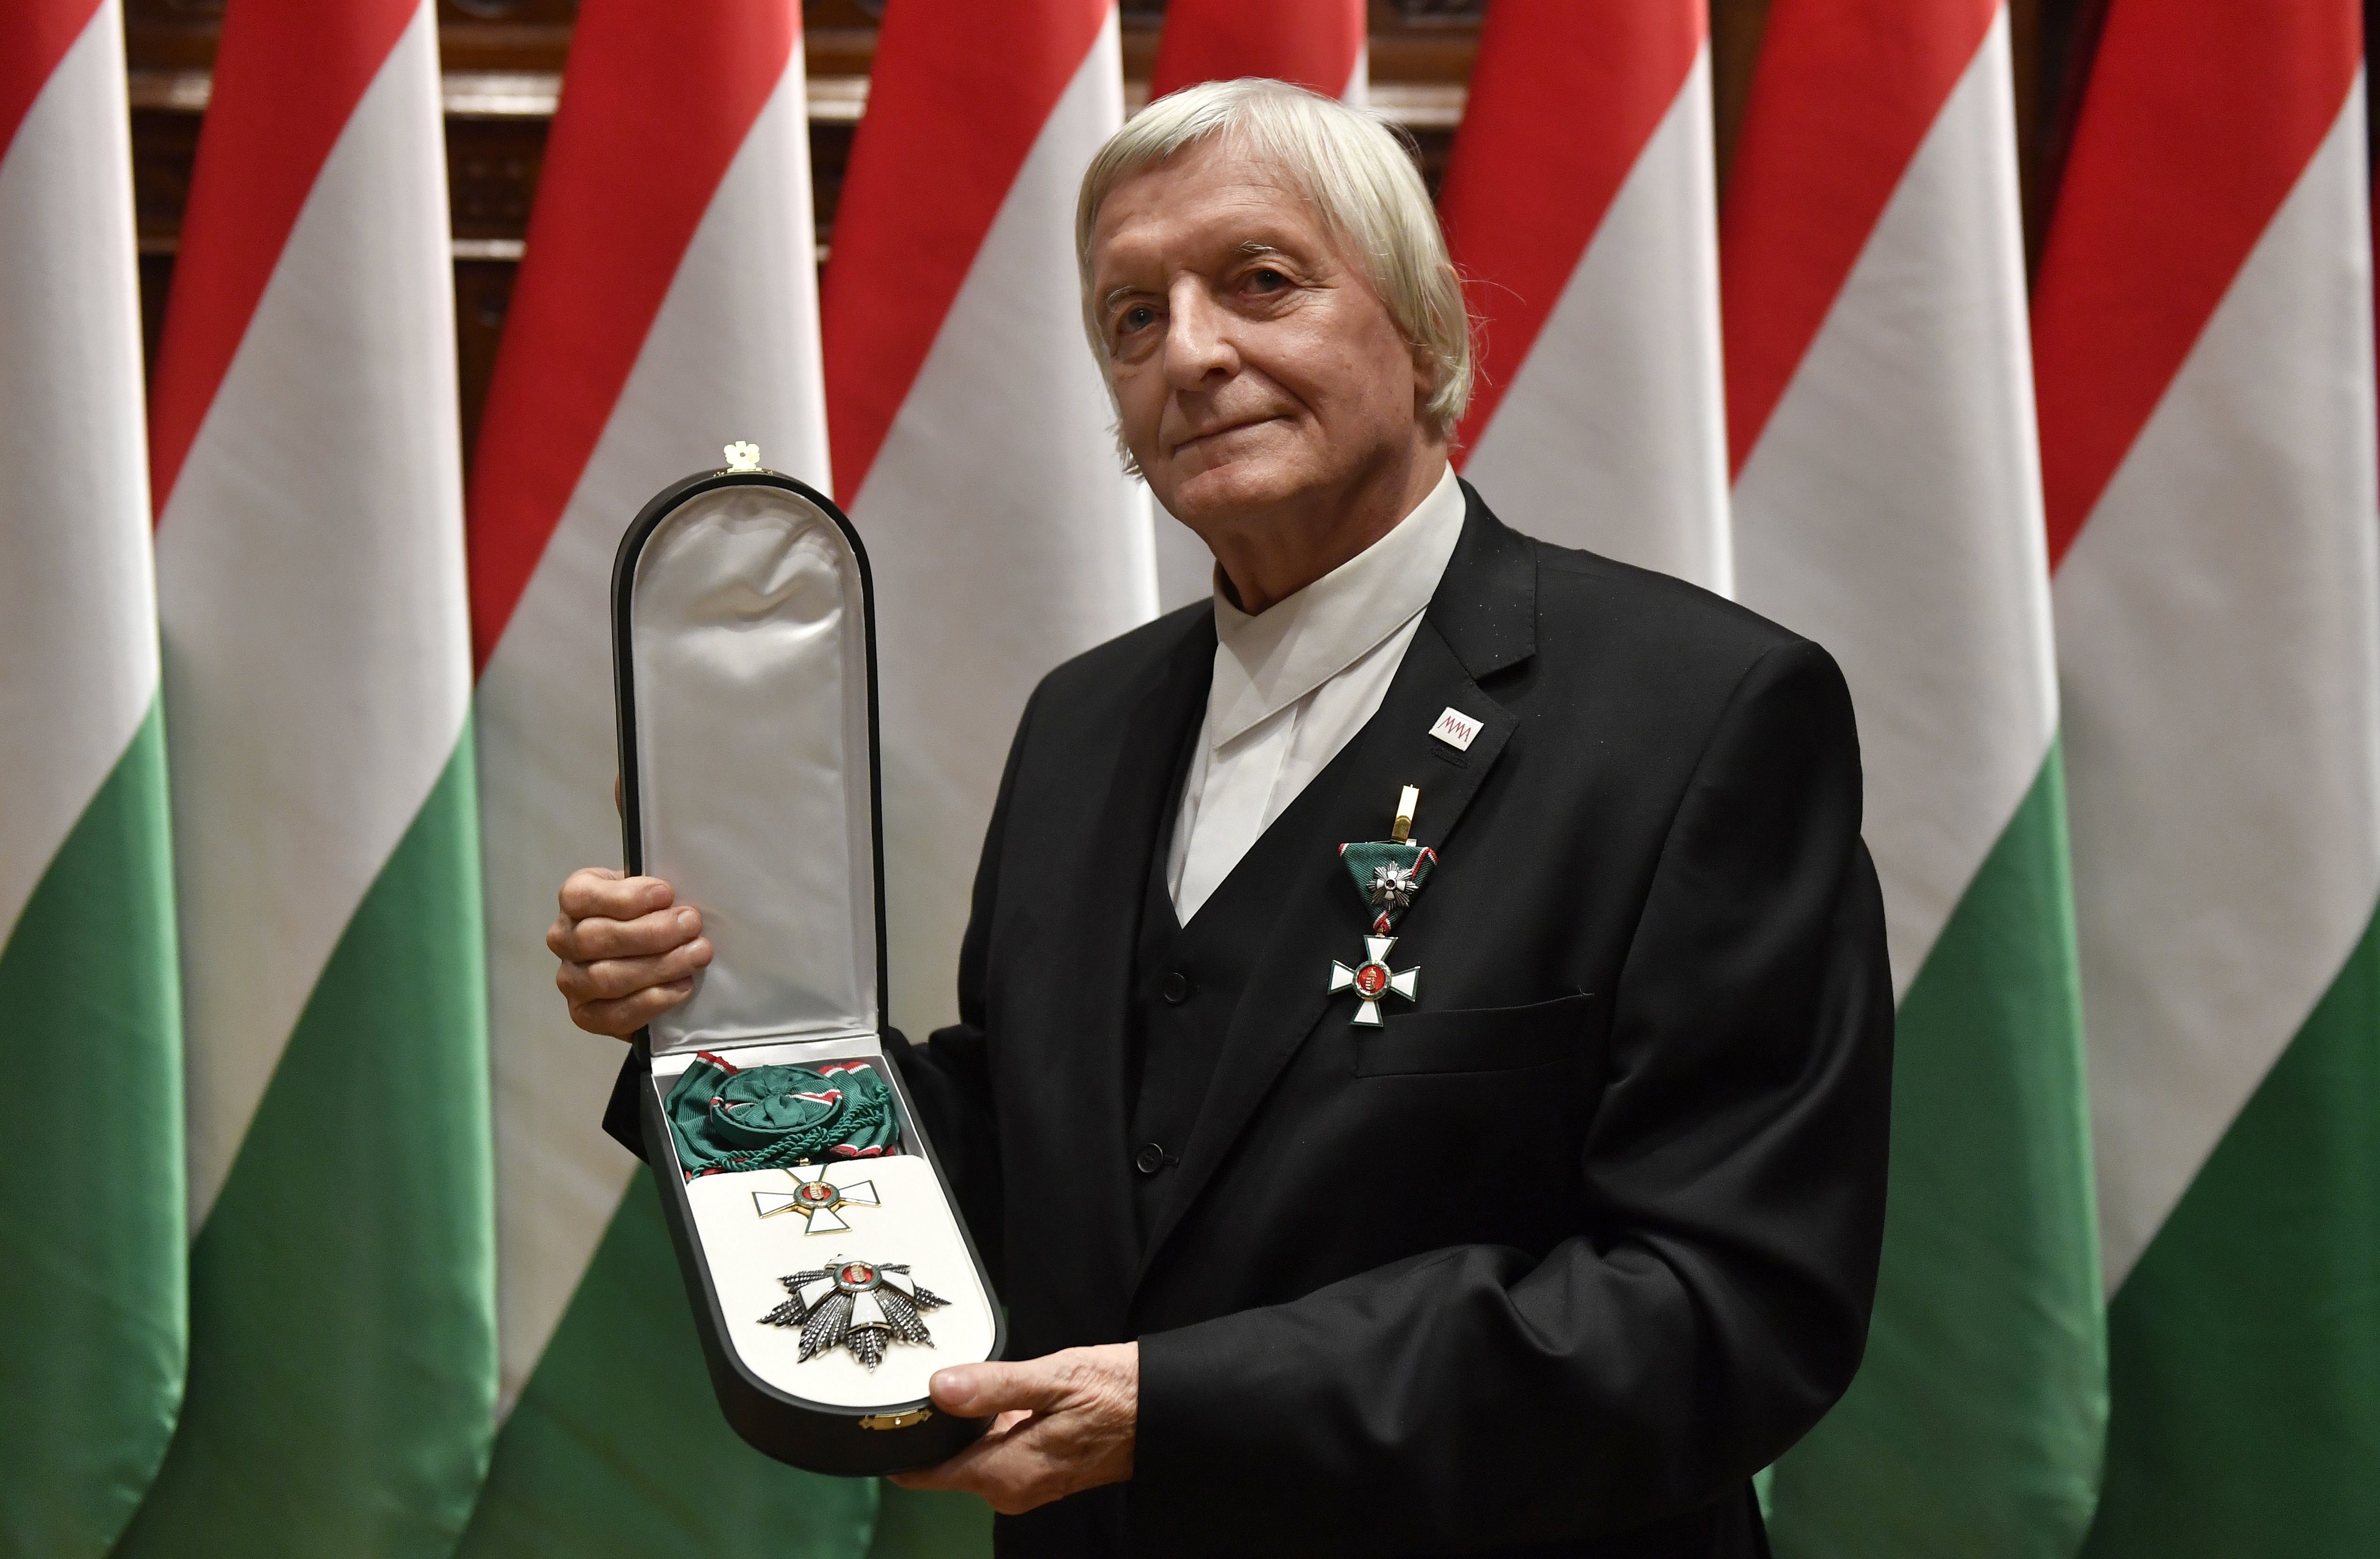 Fekete György, a Magyar Művészeti Akadémia távozó elnöke, miután átvette a Magyar Érdemrend Nagykeresztje kitüntetést Orbán Viktor miniszterelnöktől az Országházban 2017. október 30-án